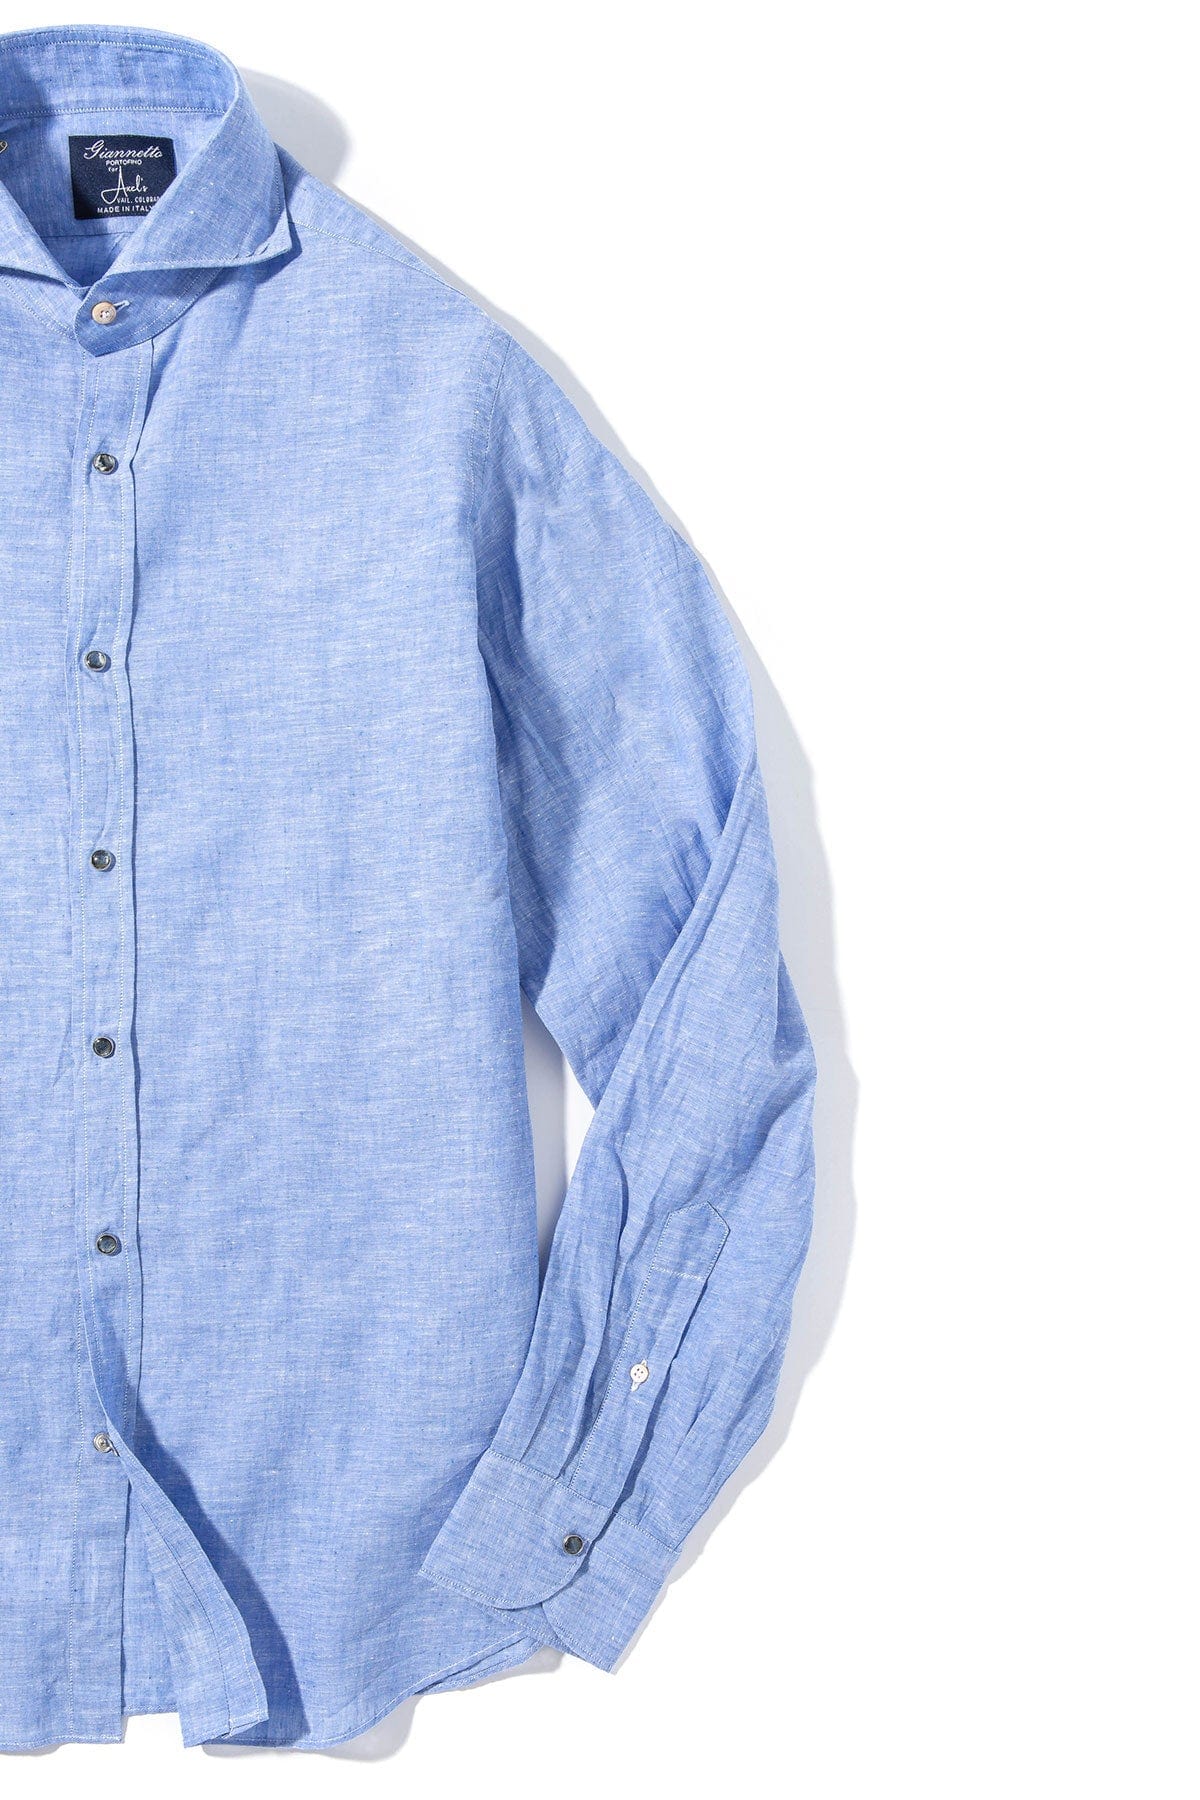 Mach Linen Cotton Shirt in Blue - AXEL'S